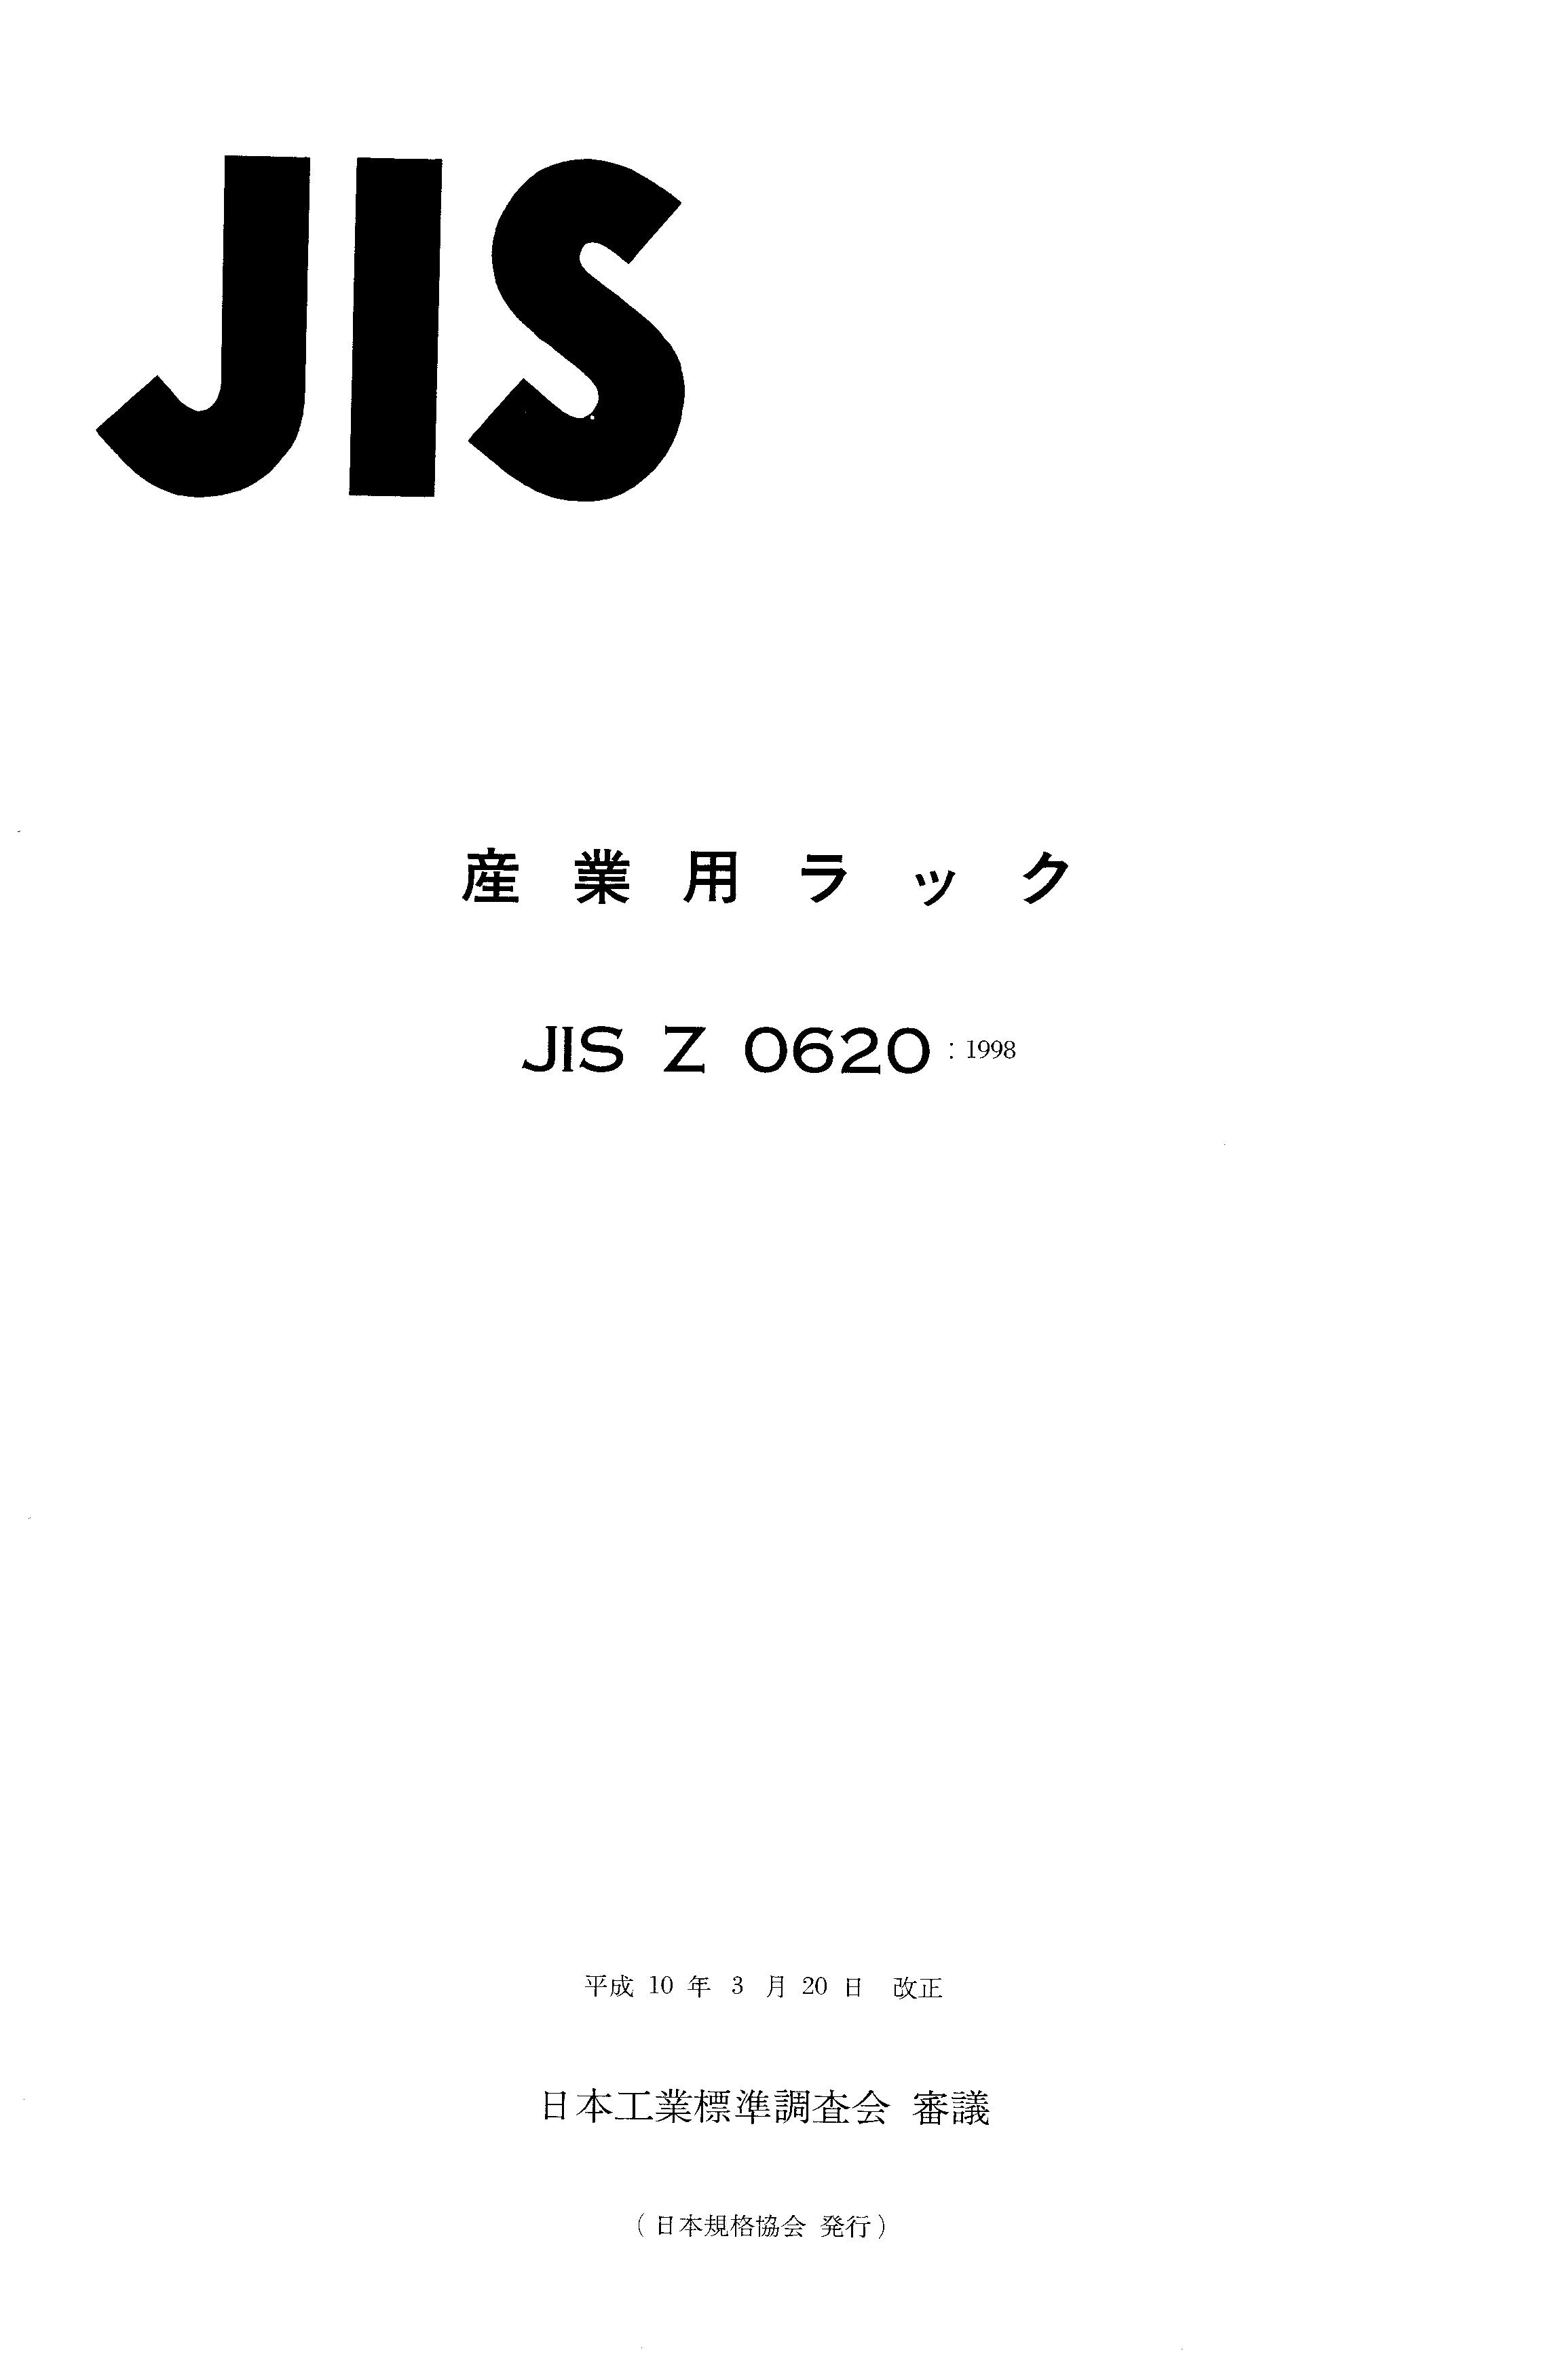 JIS Z 0620:1998